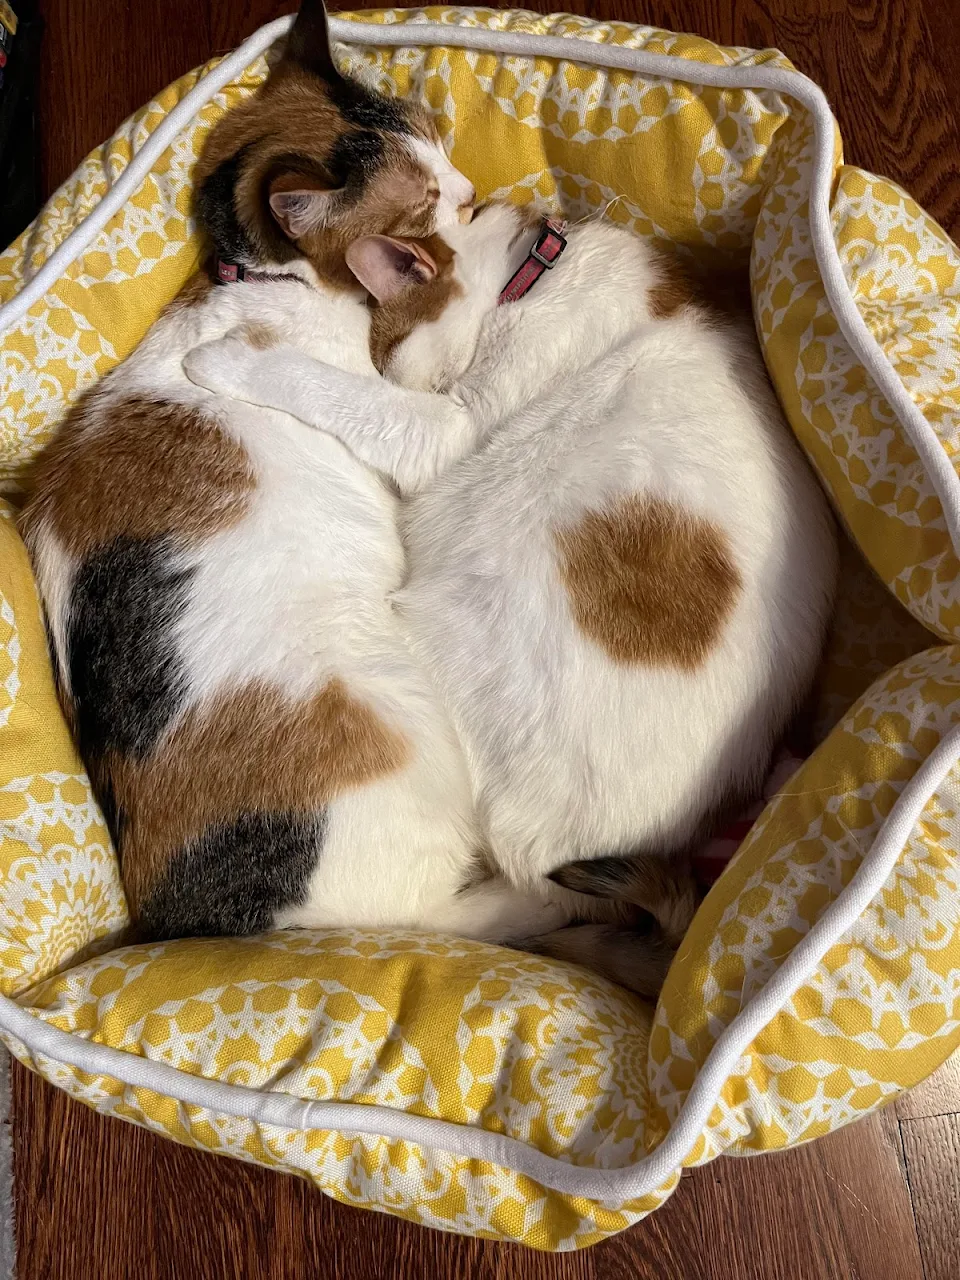 Mama cat hugging her daughter